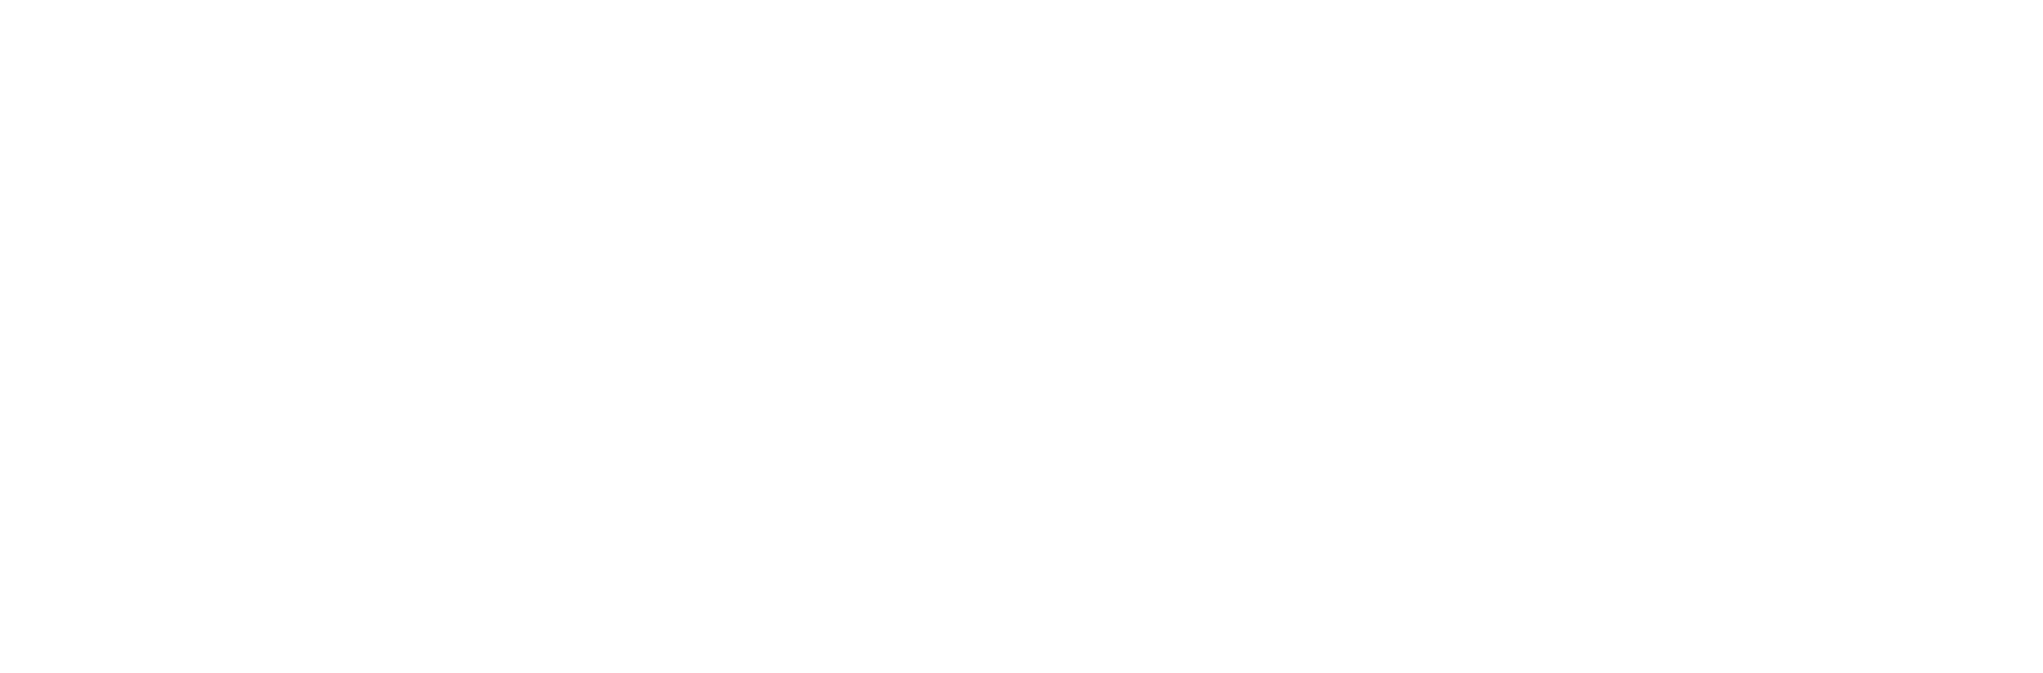 Episcopal Parish Network